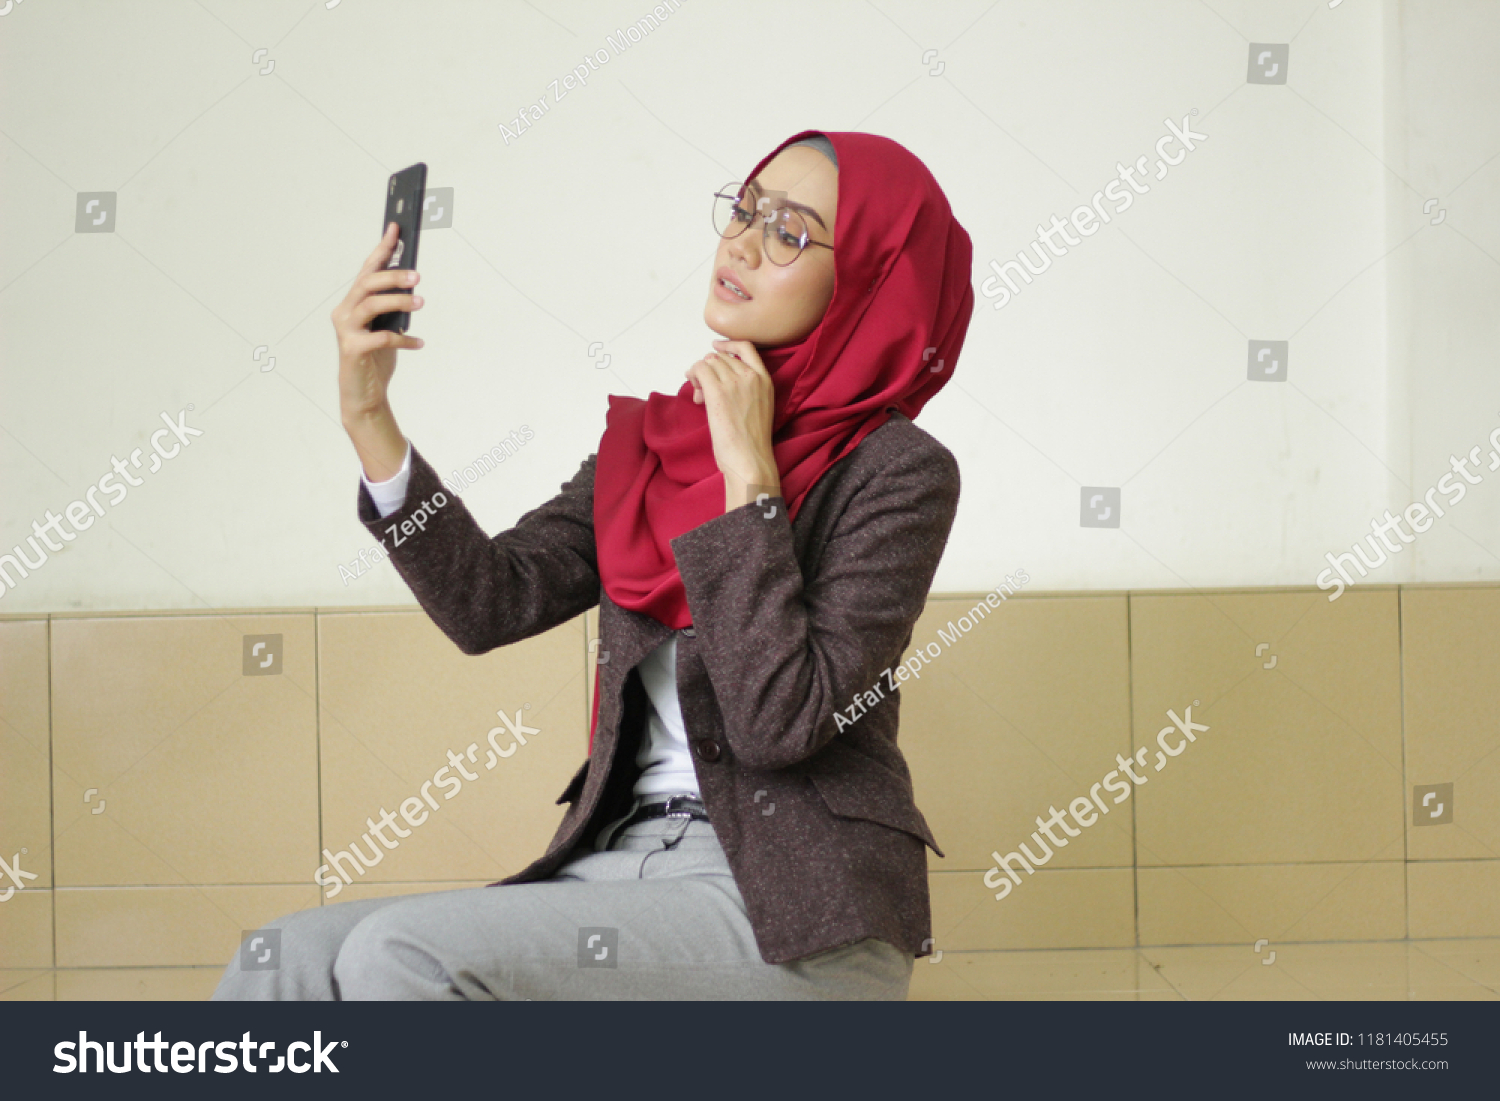 business attire hijab